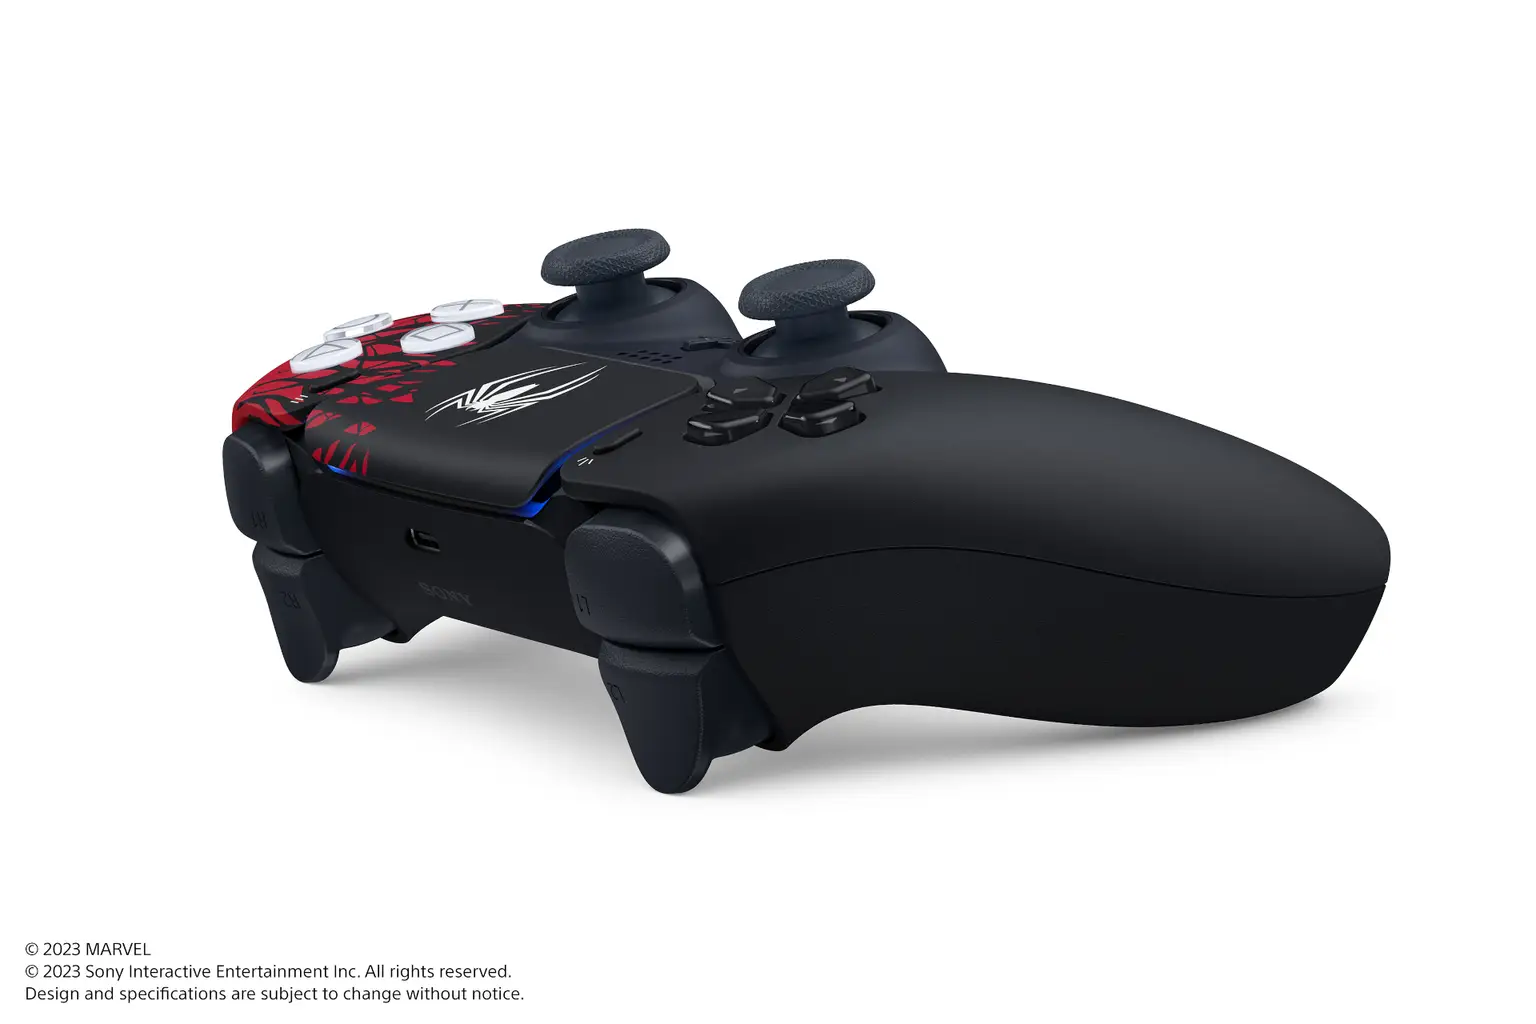 Edição digital e bundle do PlayStation 5 estão em oferta - NerdBunker